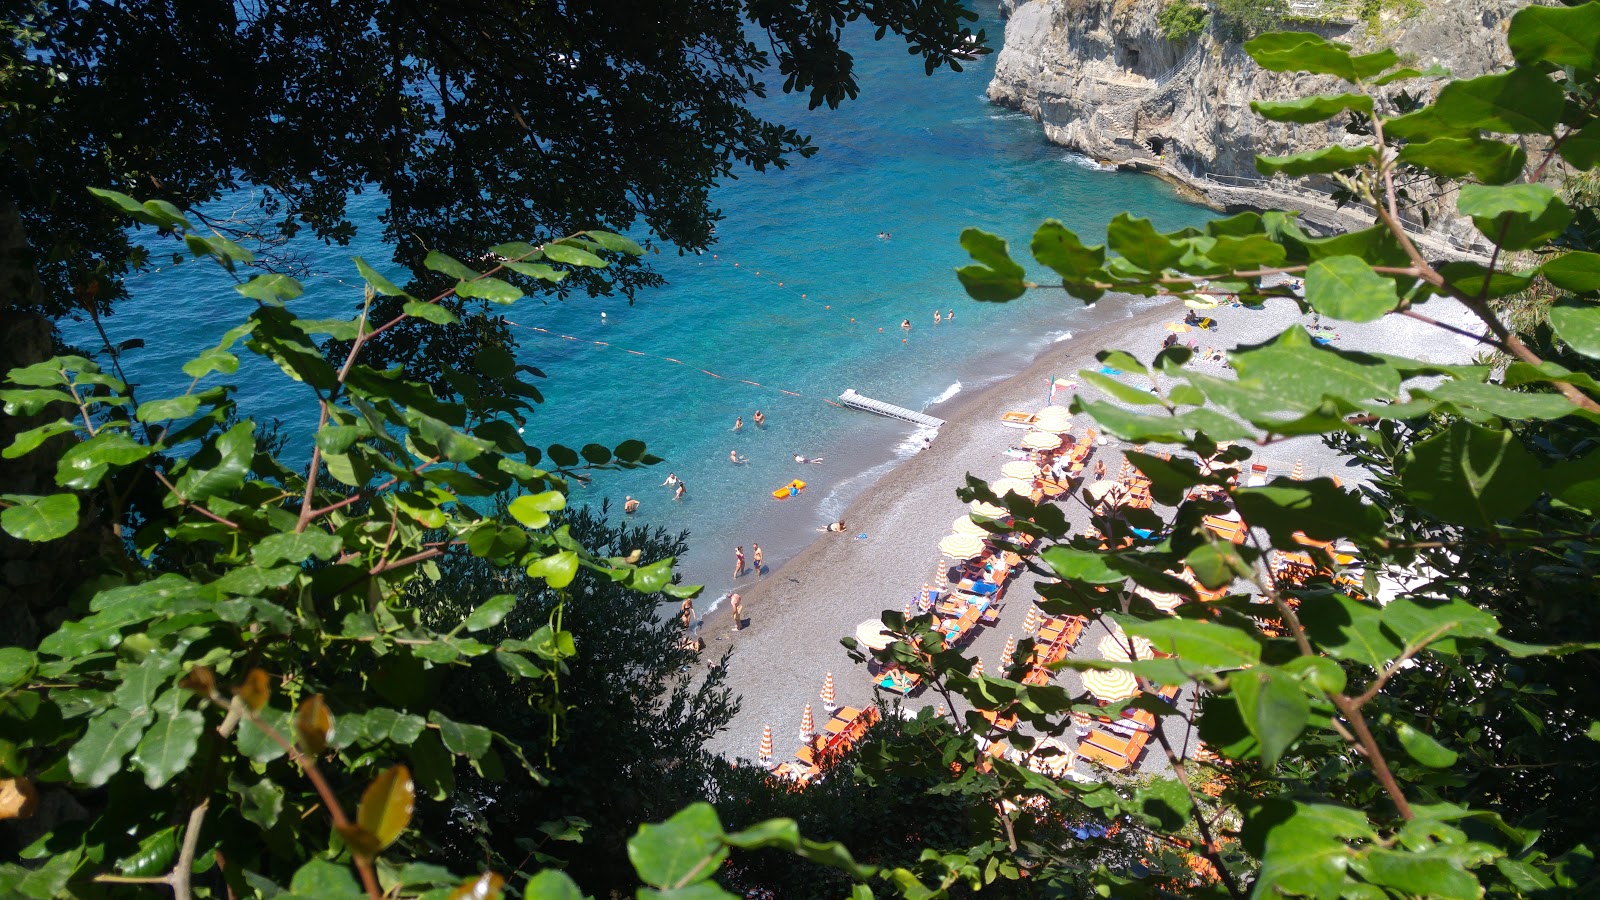 Arienzo beach'in fotoğrafı gri ince çakıl taş yüzey ile